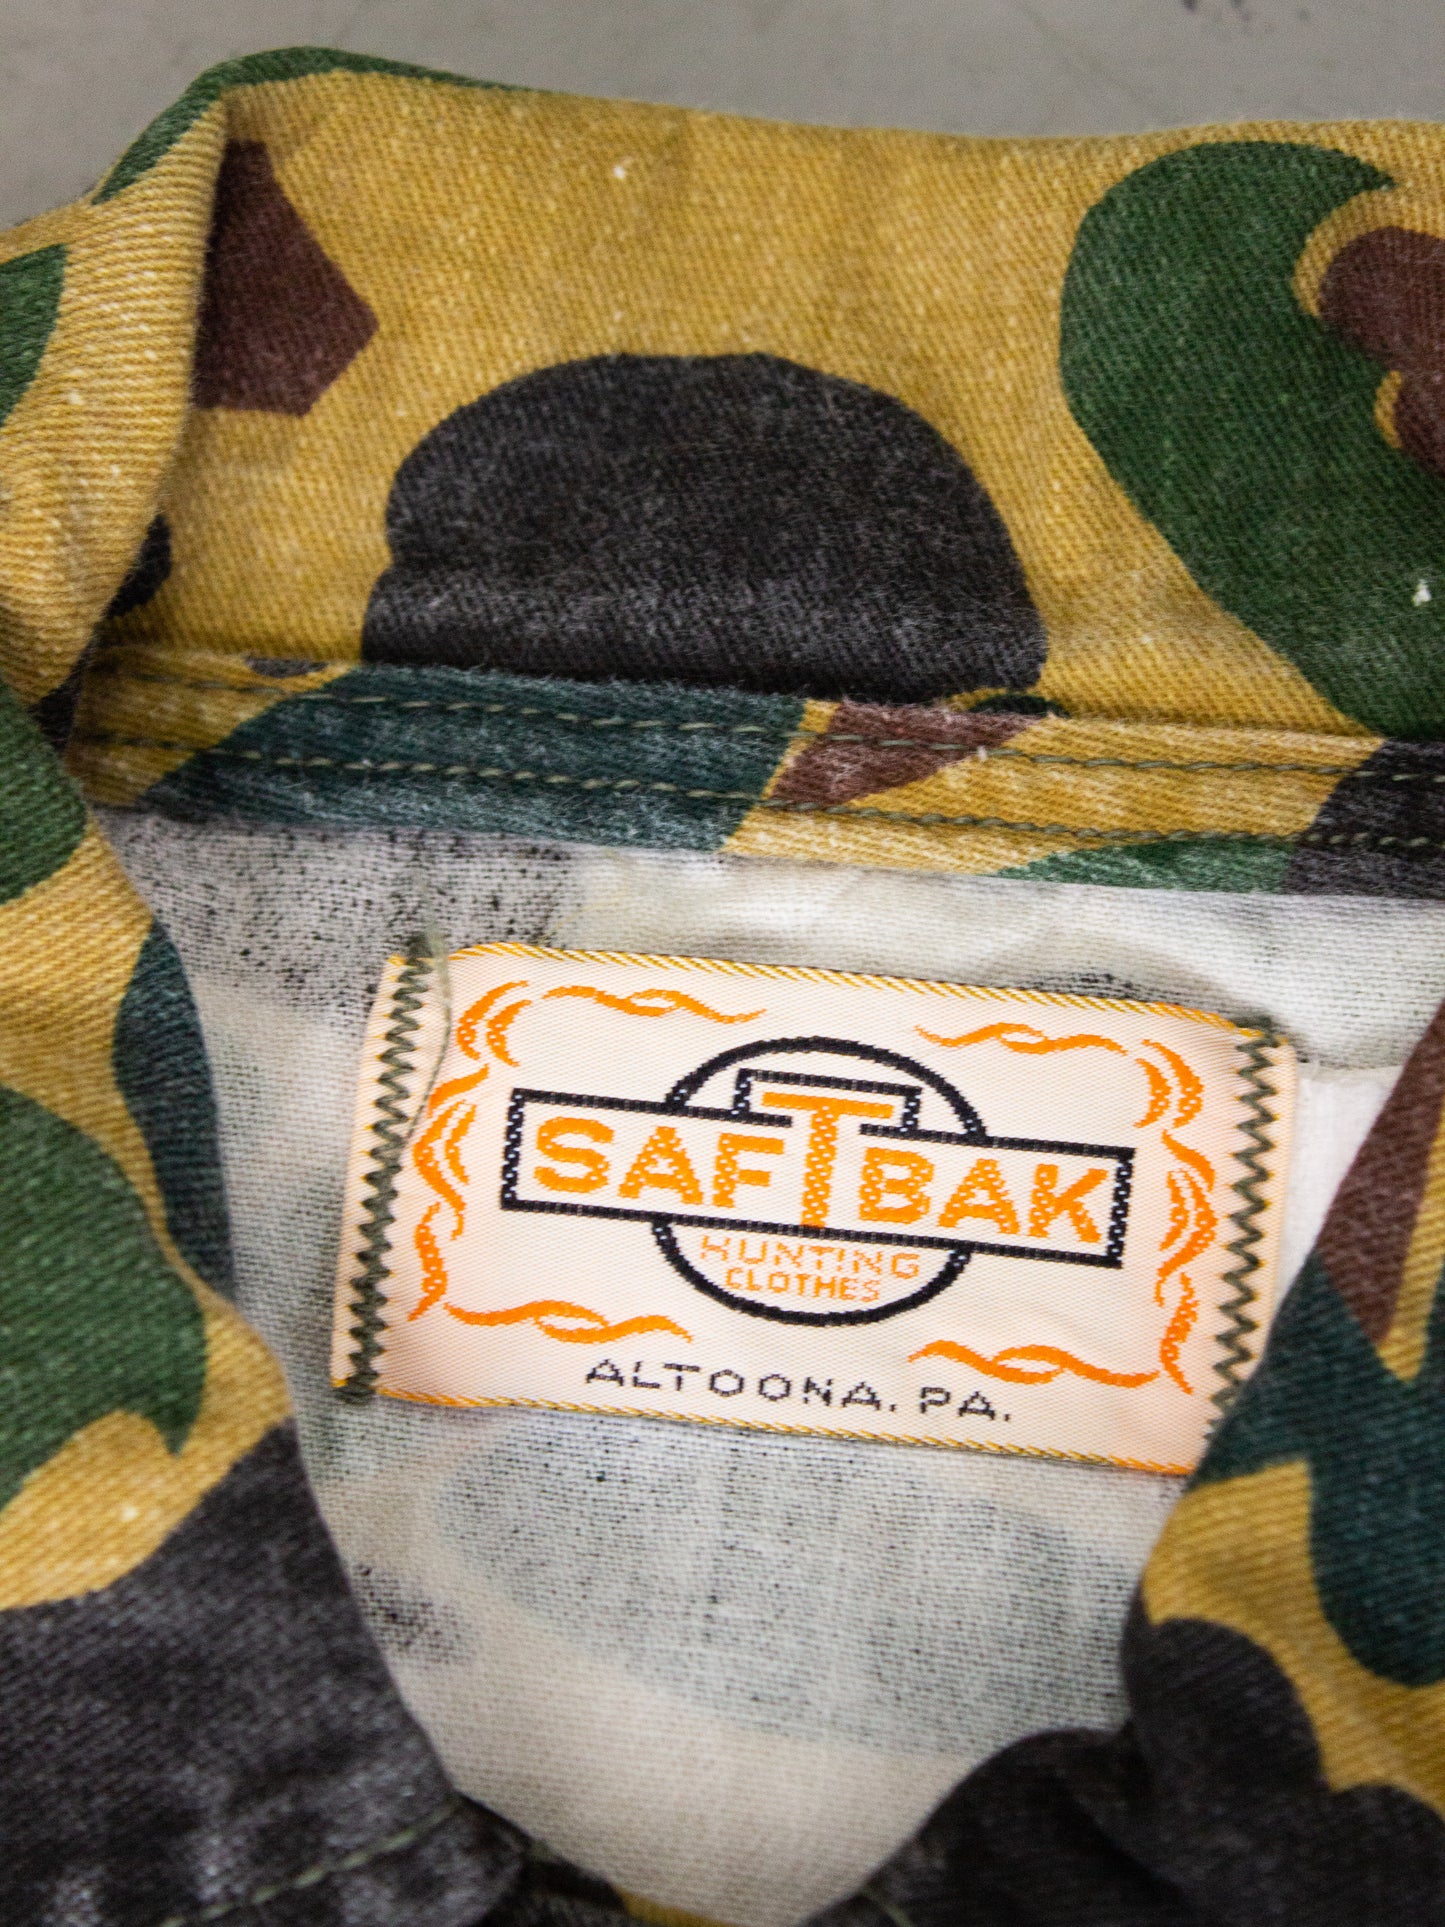 1970's Saftbak Camo Hunting Button Up Shirt Made in USA (Medium-Large)